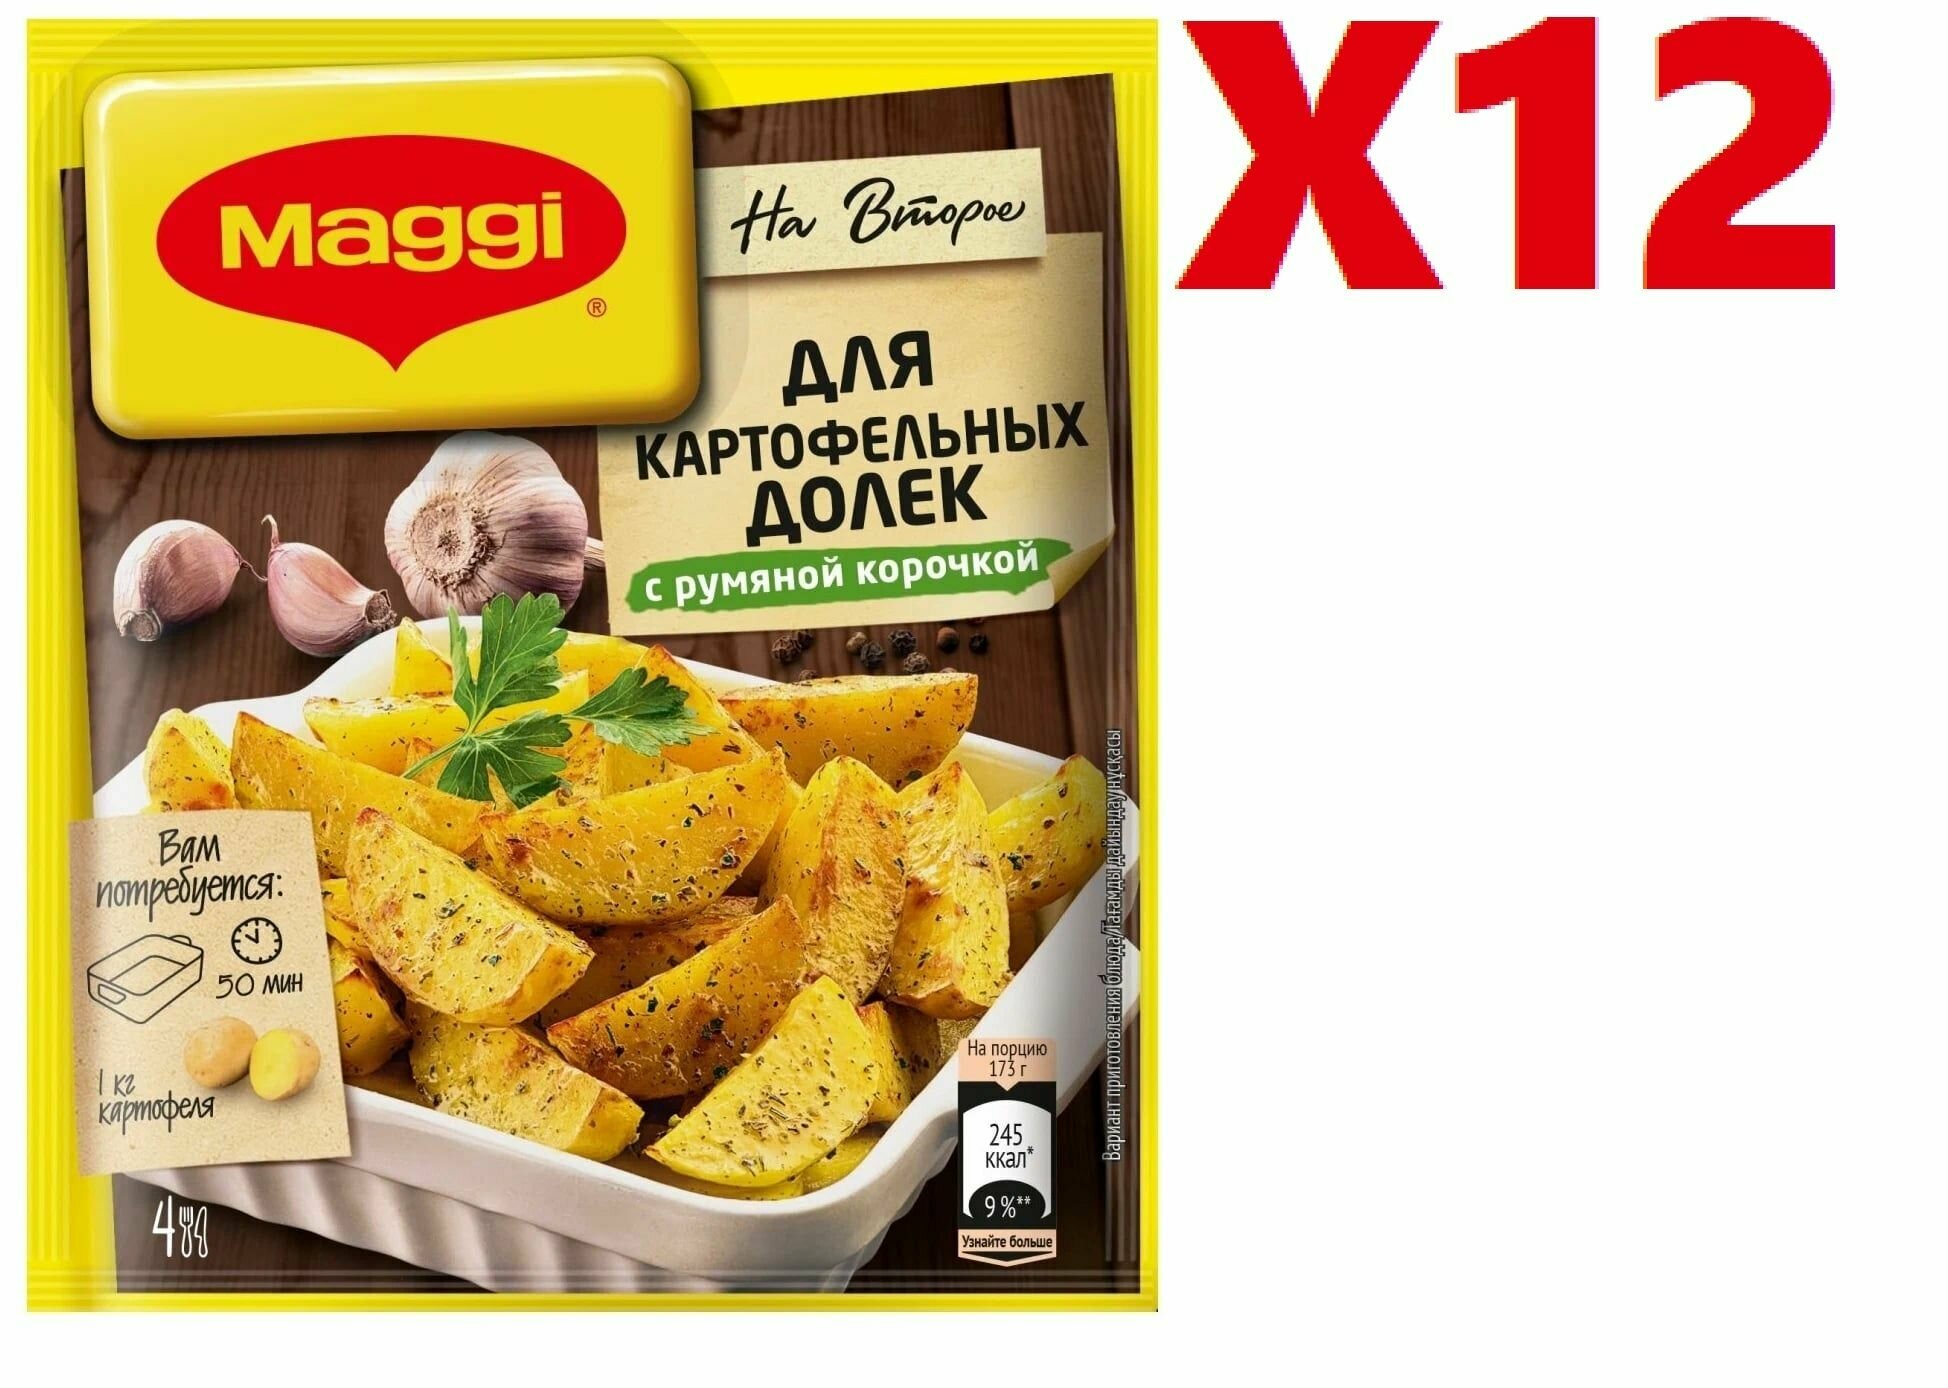 Приправа Maggi "На второе", для картофельных долек с румяной корочкой, 20г 12 шт